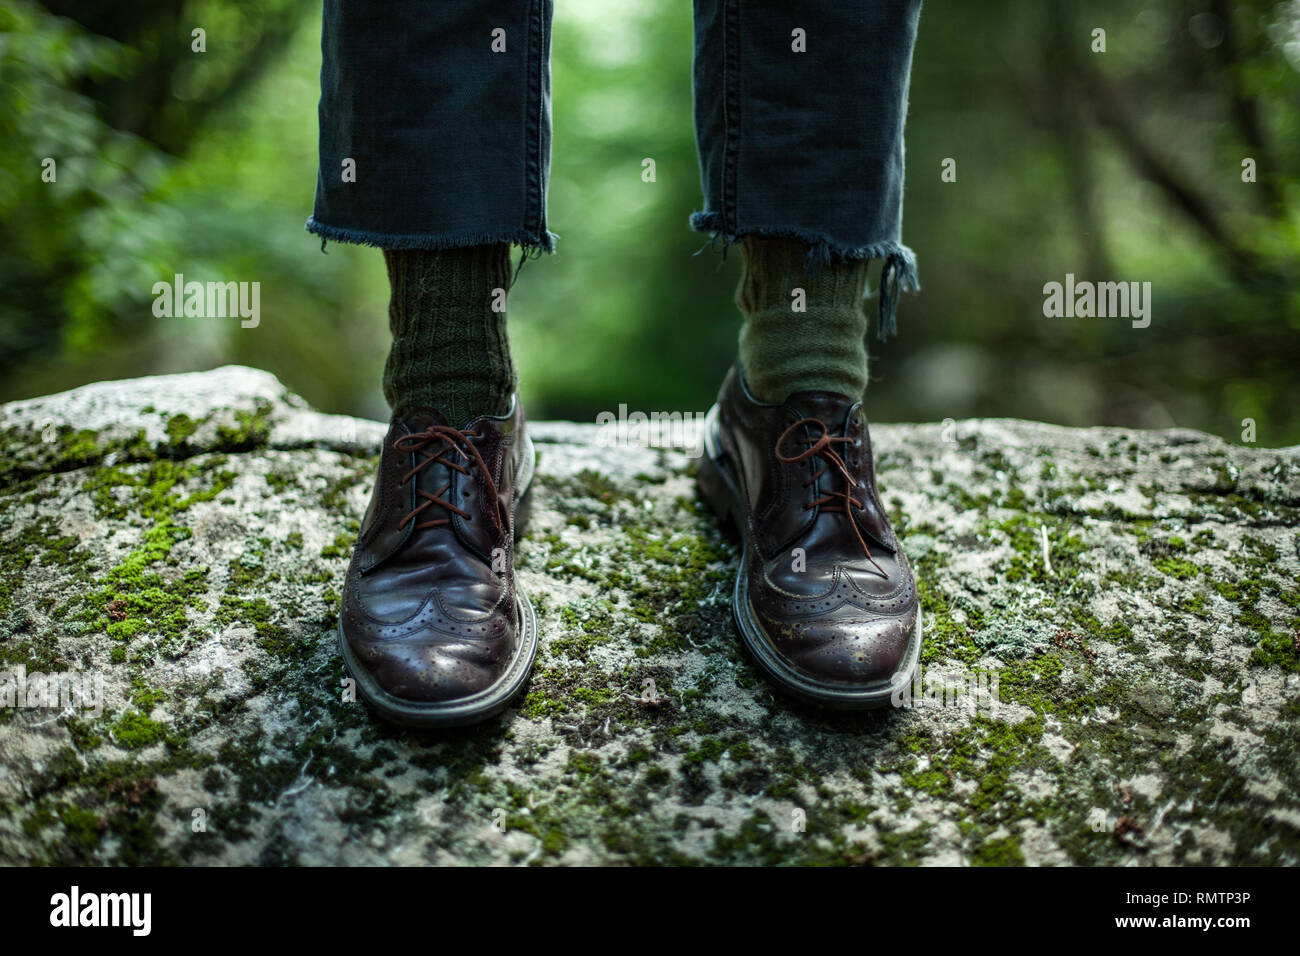 Les pieds de l'homme portant des chaussures en cuir et des chaussettes vert, debout sur un rocher avec un arrière-plan flou de la nature Banque D'Images